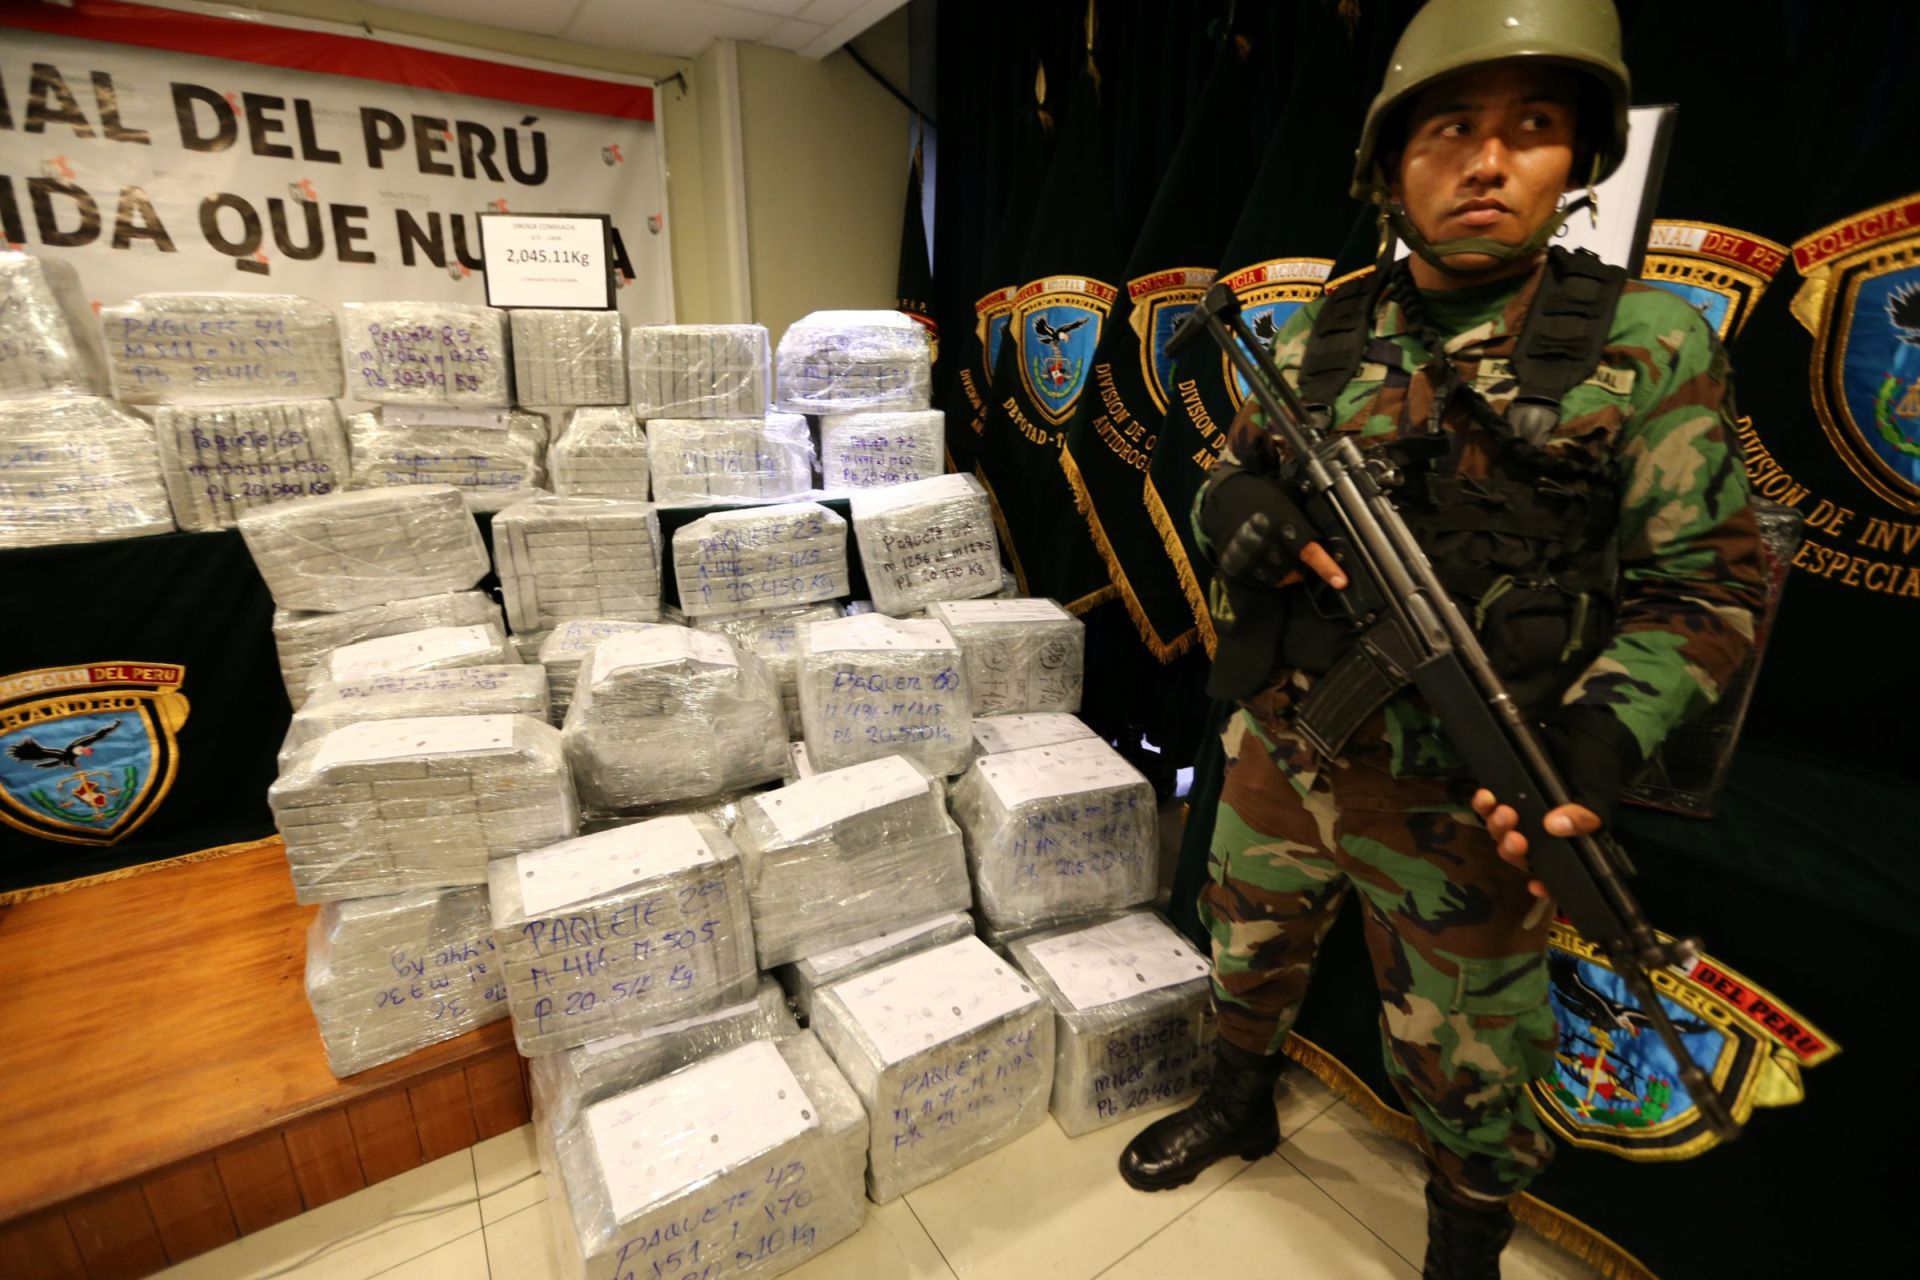 Περού: Βρήκαν δύο τόνους κοκαΐνης κρυμμένους σε πακέτα με σπαράγγια – ΦΩΤΟ ΚΑΙ ΒΙΝΤΕΟ